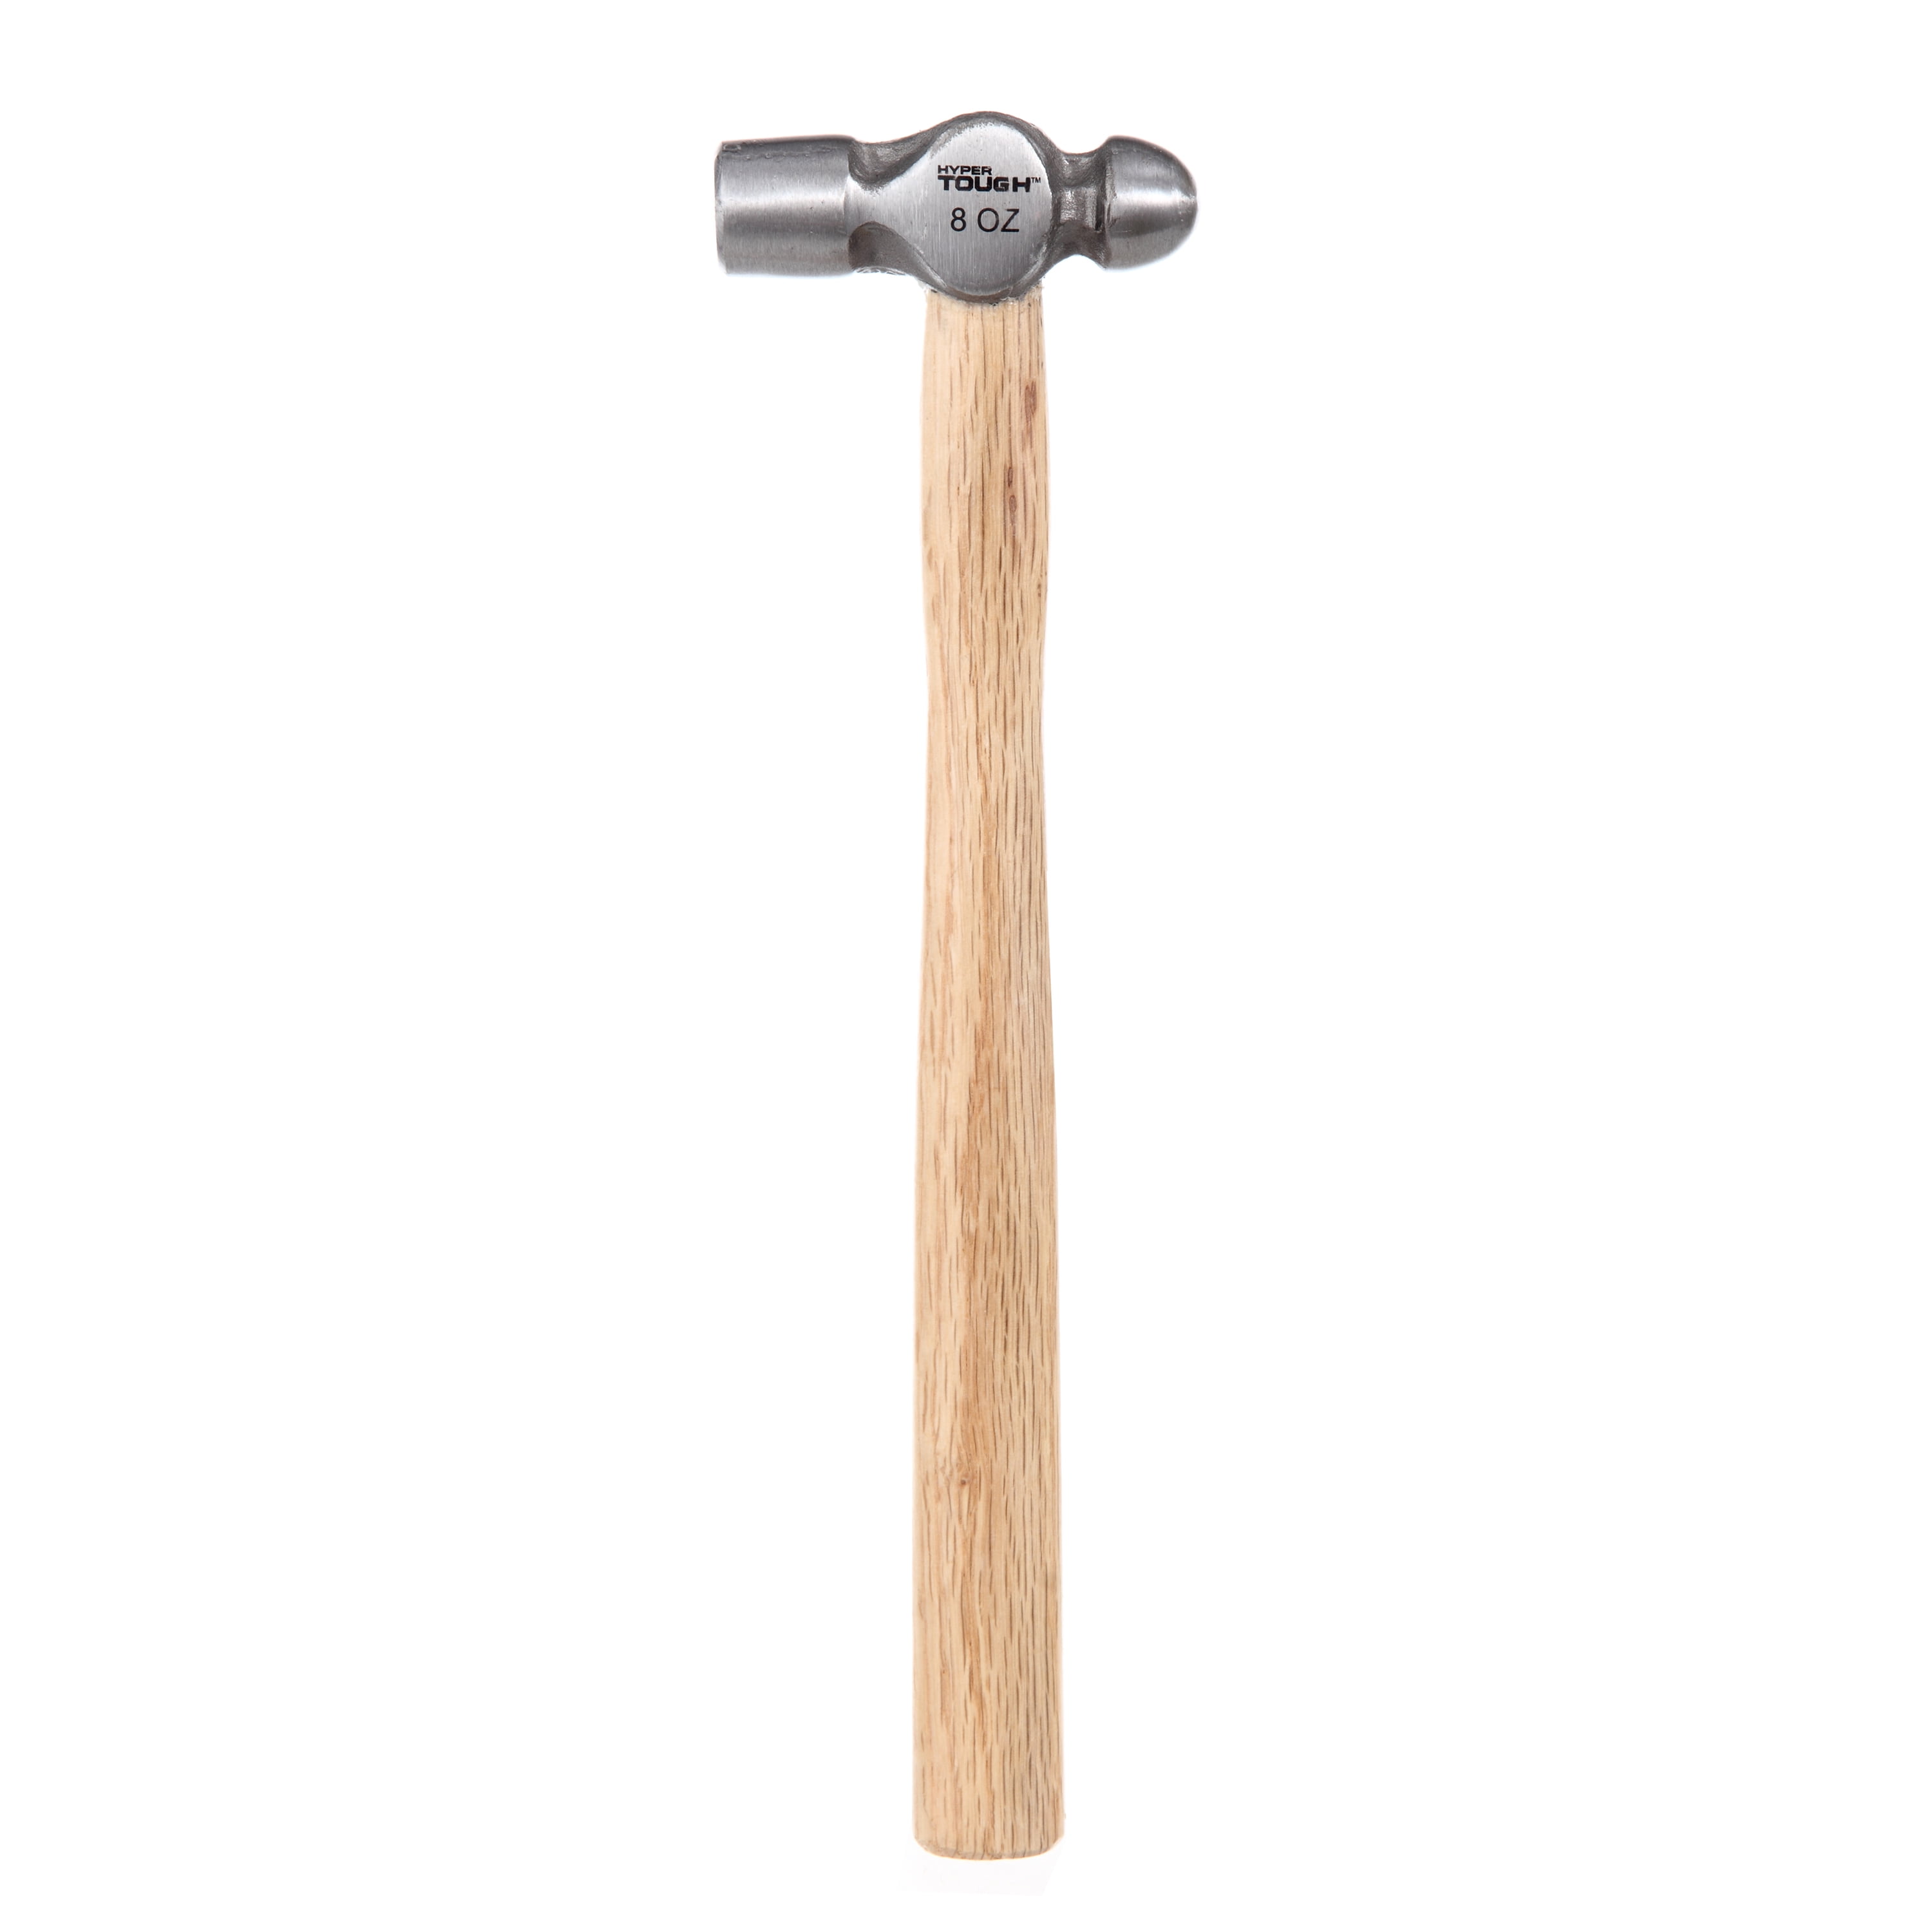 Hyper Tough 8 Ounce Ball Peen Wood Handled Hammer 4C25252D